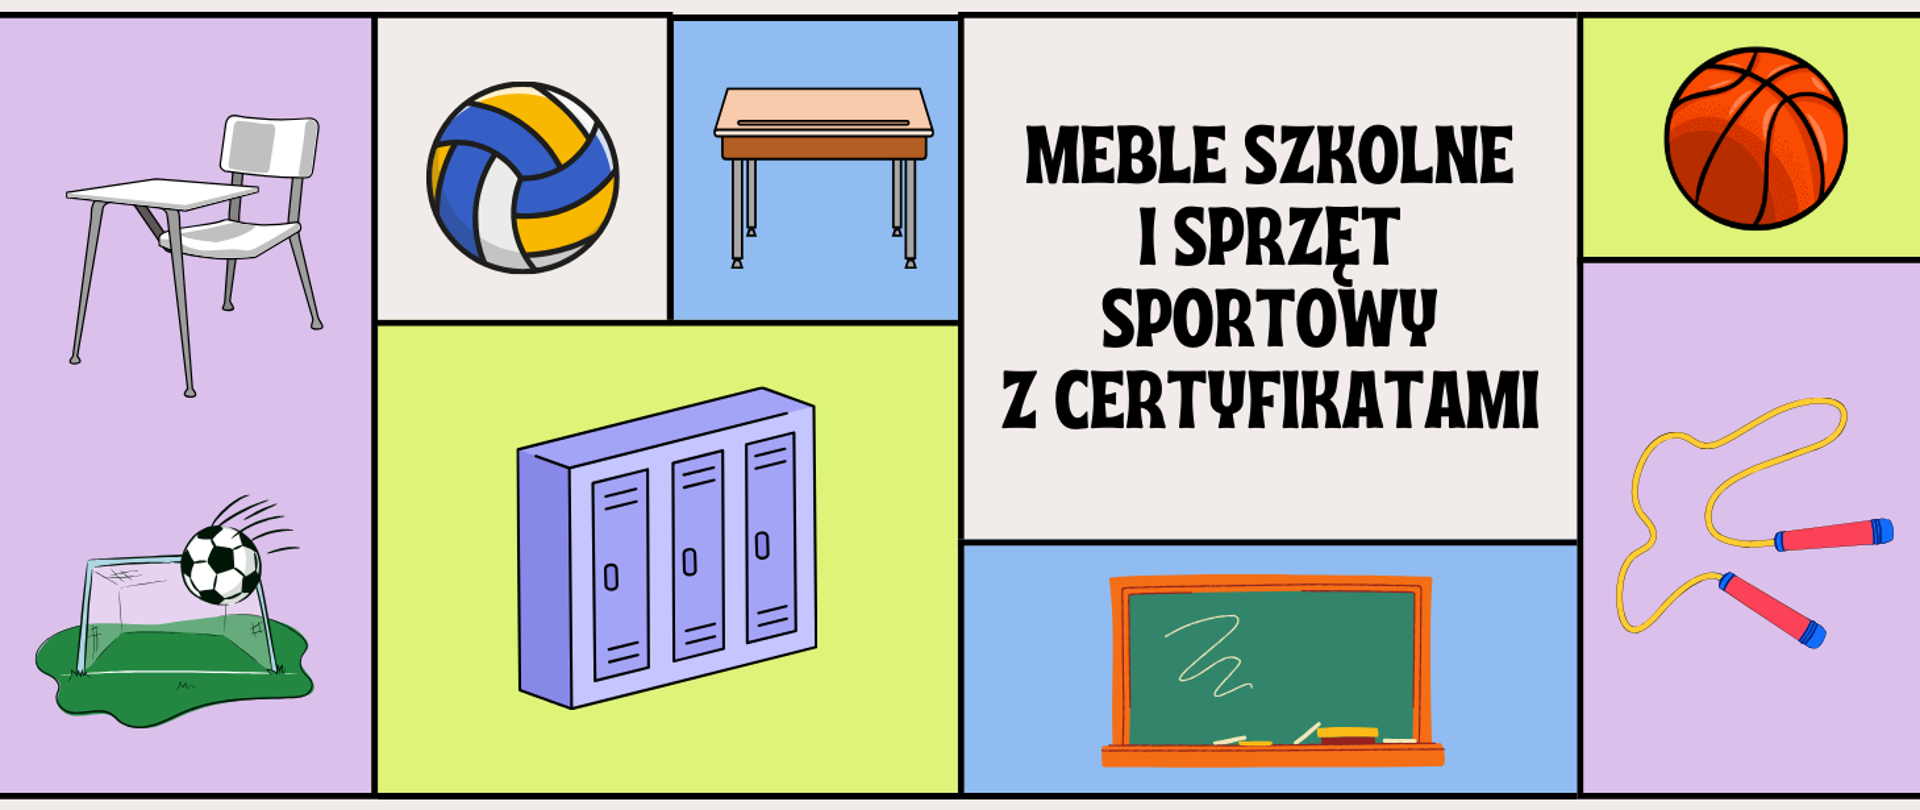 grafika przedstawia akcesoria sportowe oraz meble szkolne na kolorowych kwadratach. Na środku widnieje napis: „Meble szkolne i sprzęt sportowy z certyfikatami”.